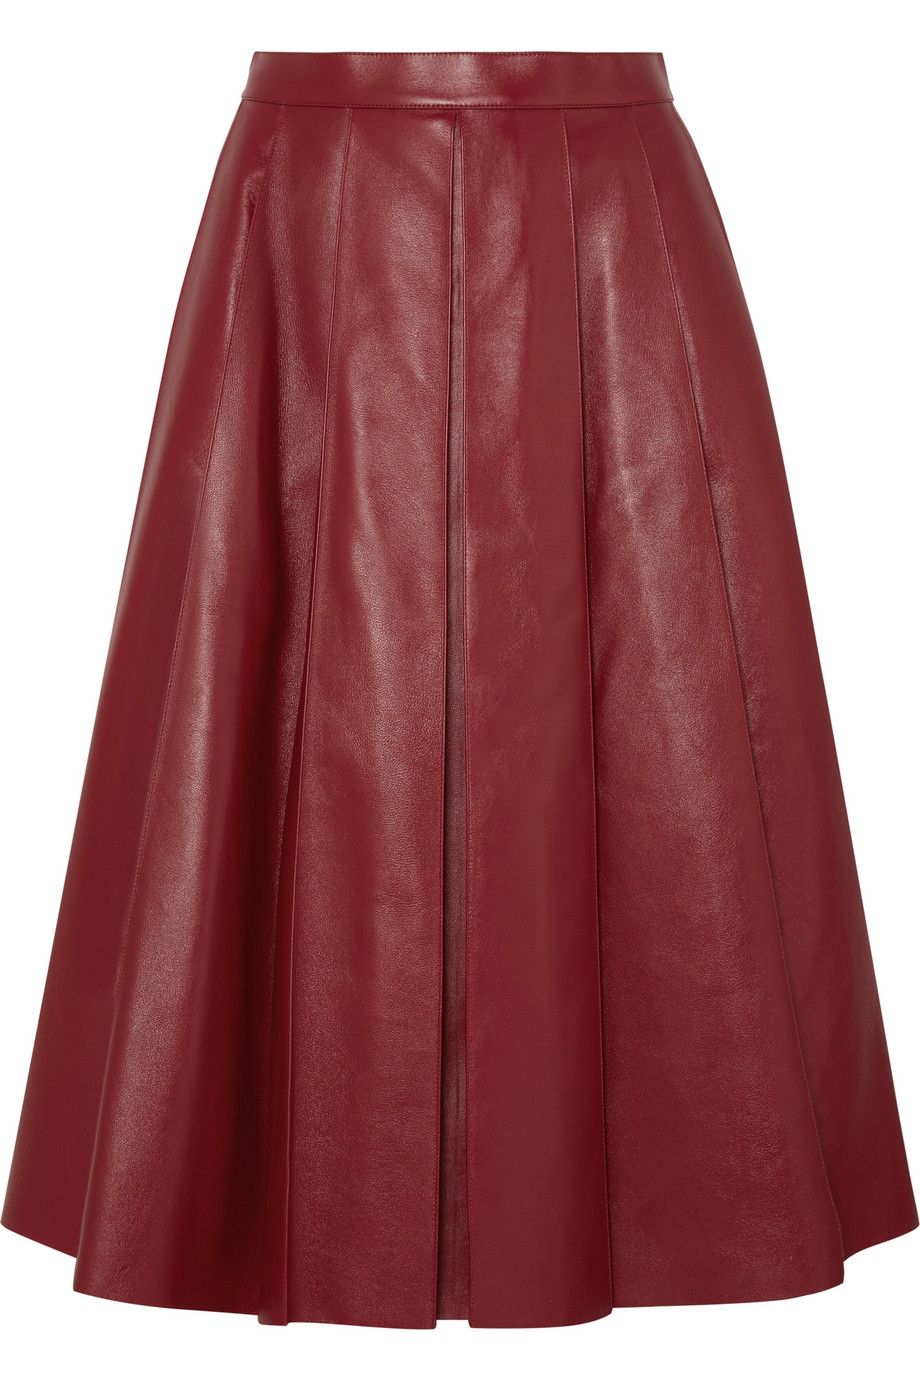 Meghan Markle Leather Skirt : LeatherCult: Genuine Custom Leather